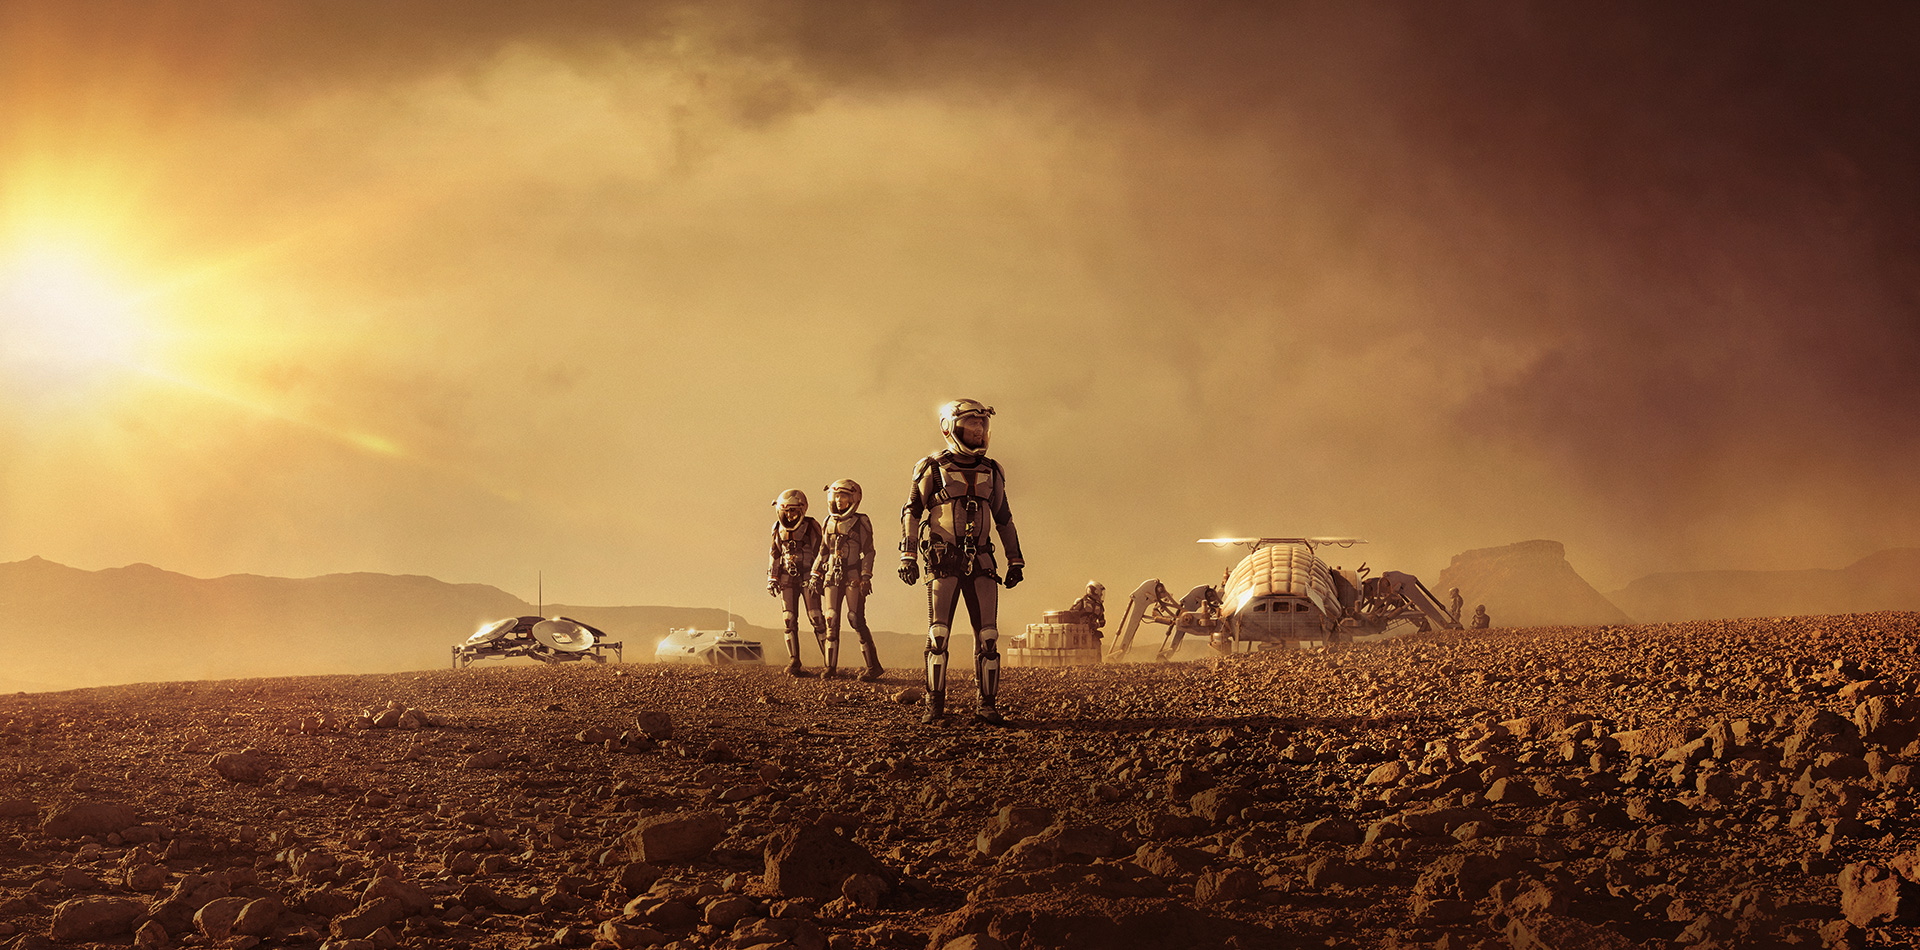 Uluslararası koalisyonla bir araya gelen dünyanın en değerli bilim insanları, gezegenler arası yeni bir çağ başlatmak için Mars’a yolculuk ediyor.